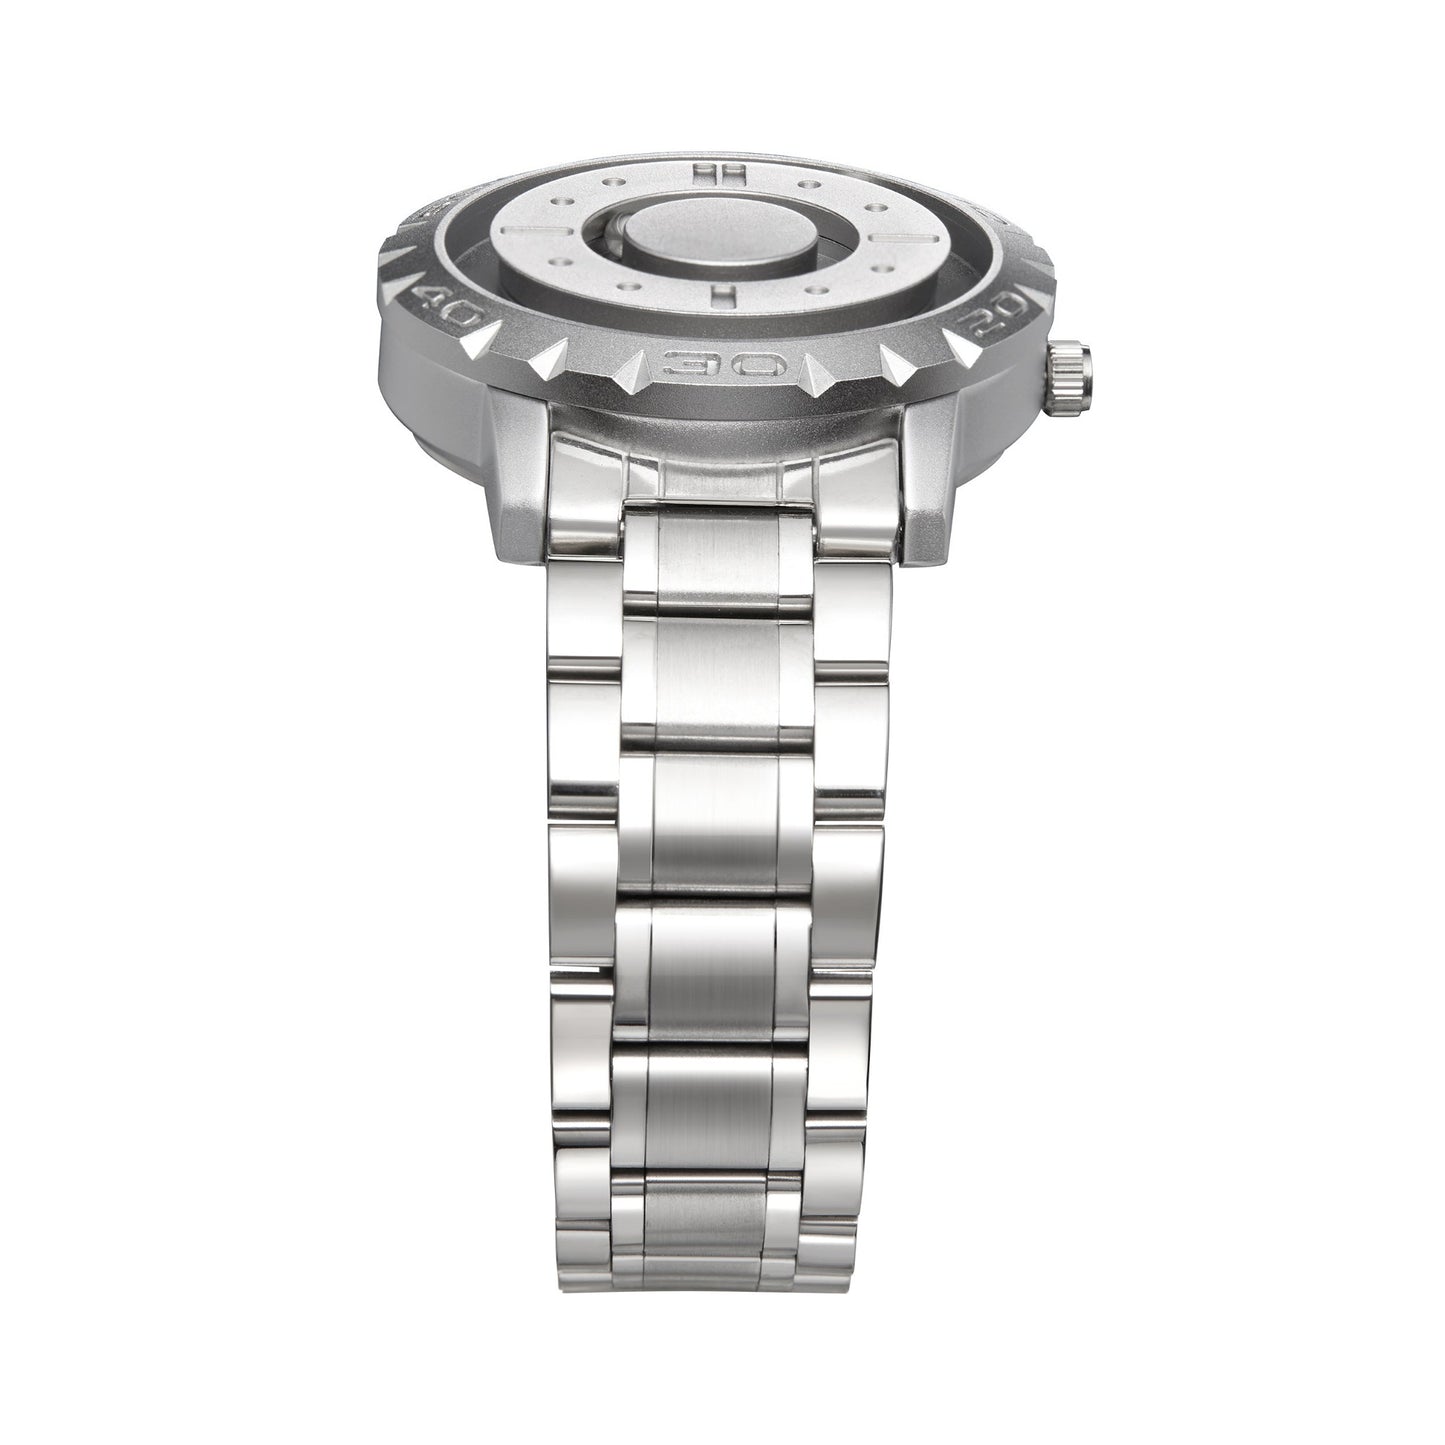 Zenit Silber - Gravity Watch